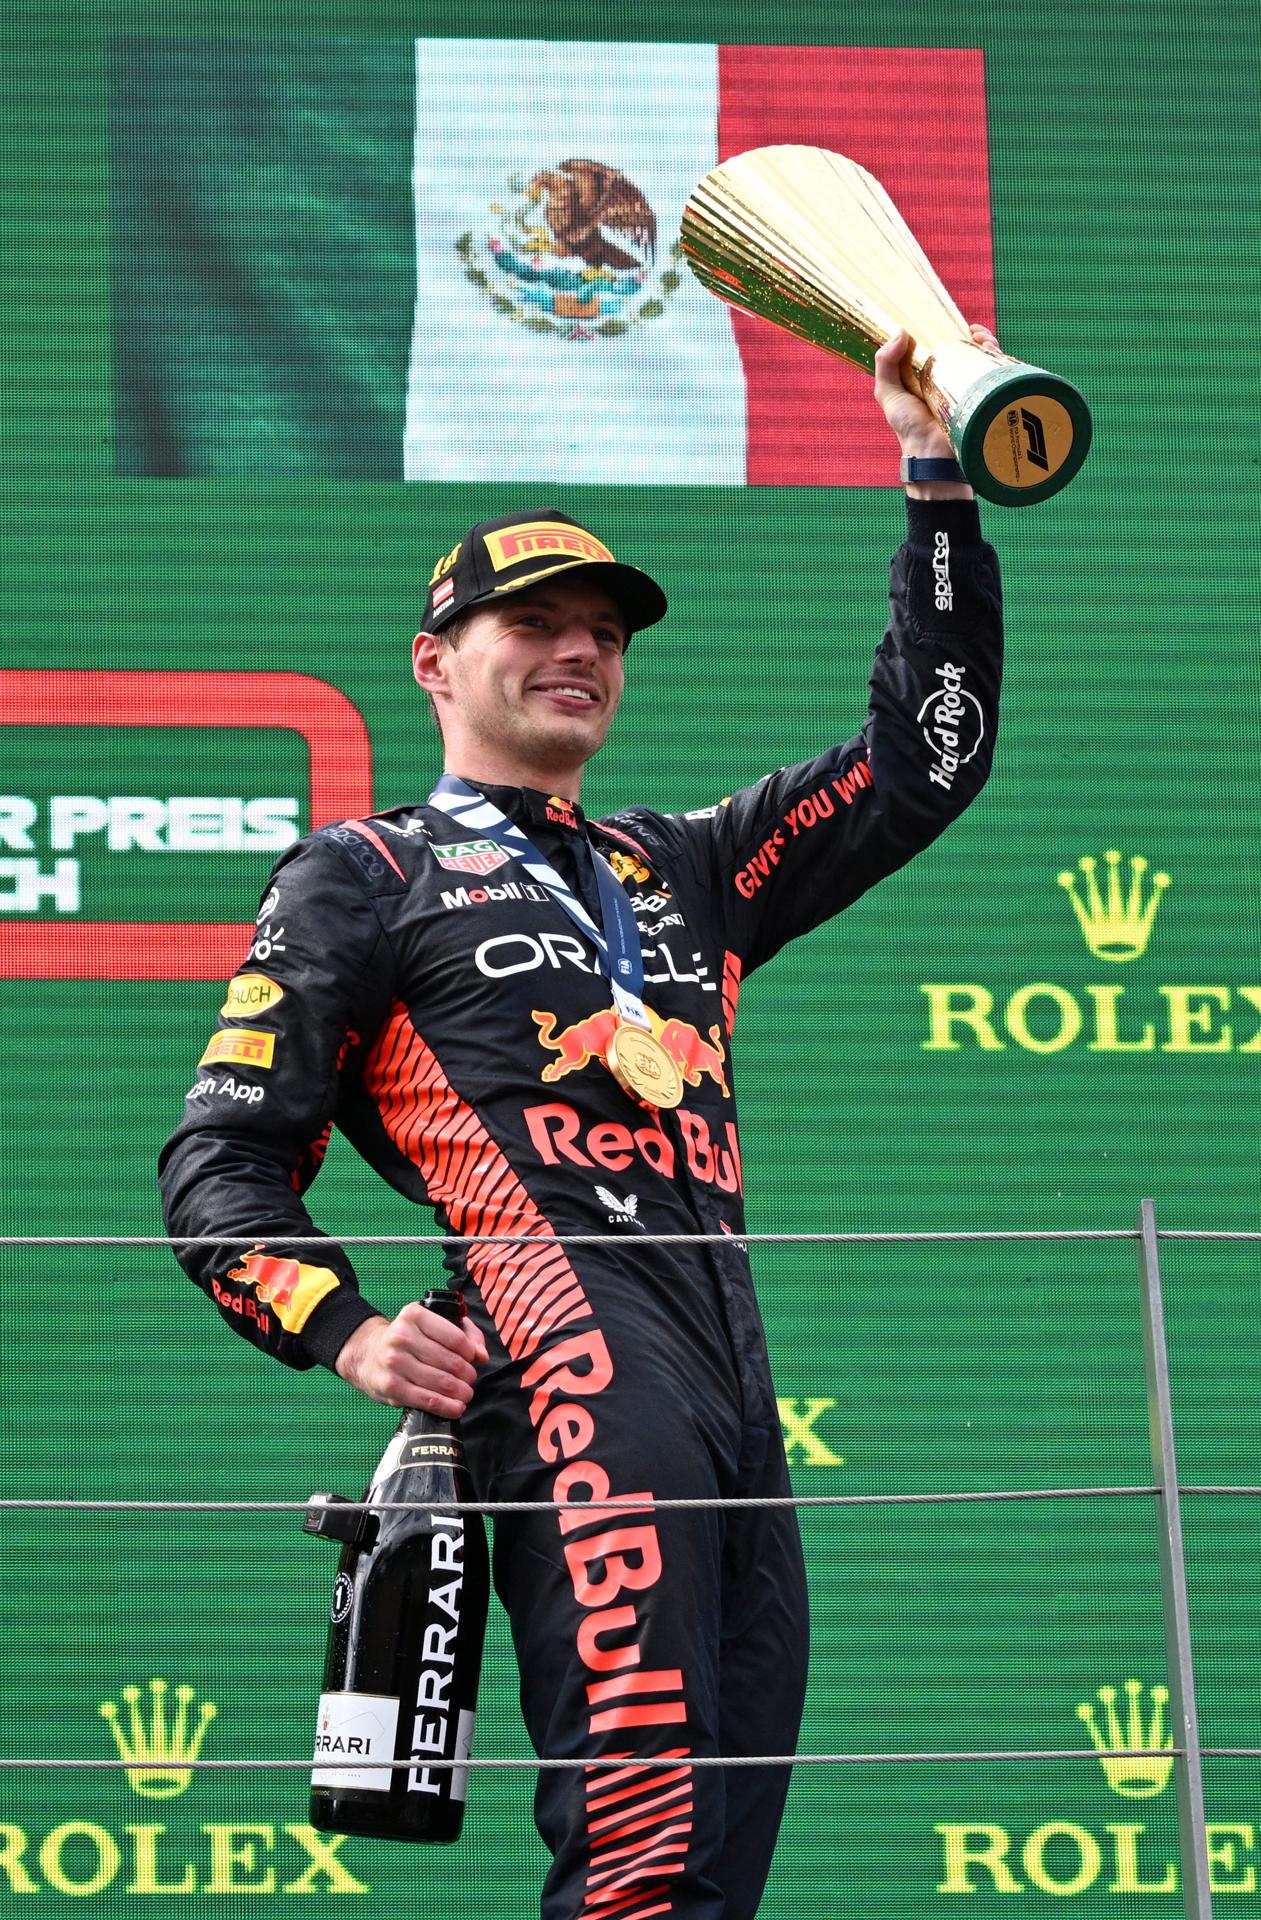 Max Verstappen culmina el seu domini al GP d'Àustria per davant d'un Leclerc protegit